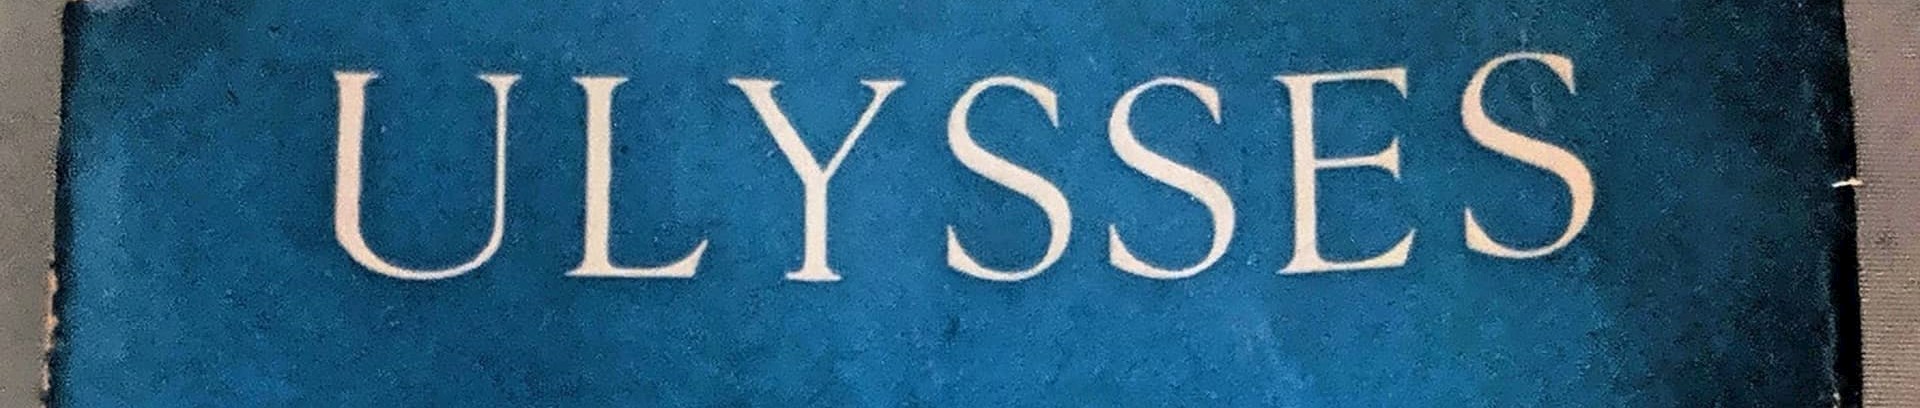 James Joyce 'Ulysses' - litteraturkursus i FOF århus